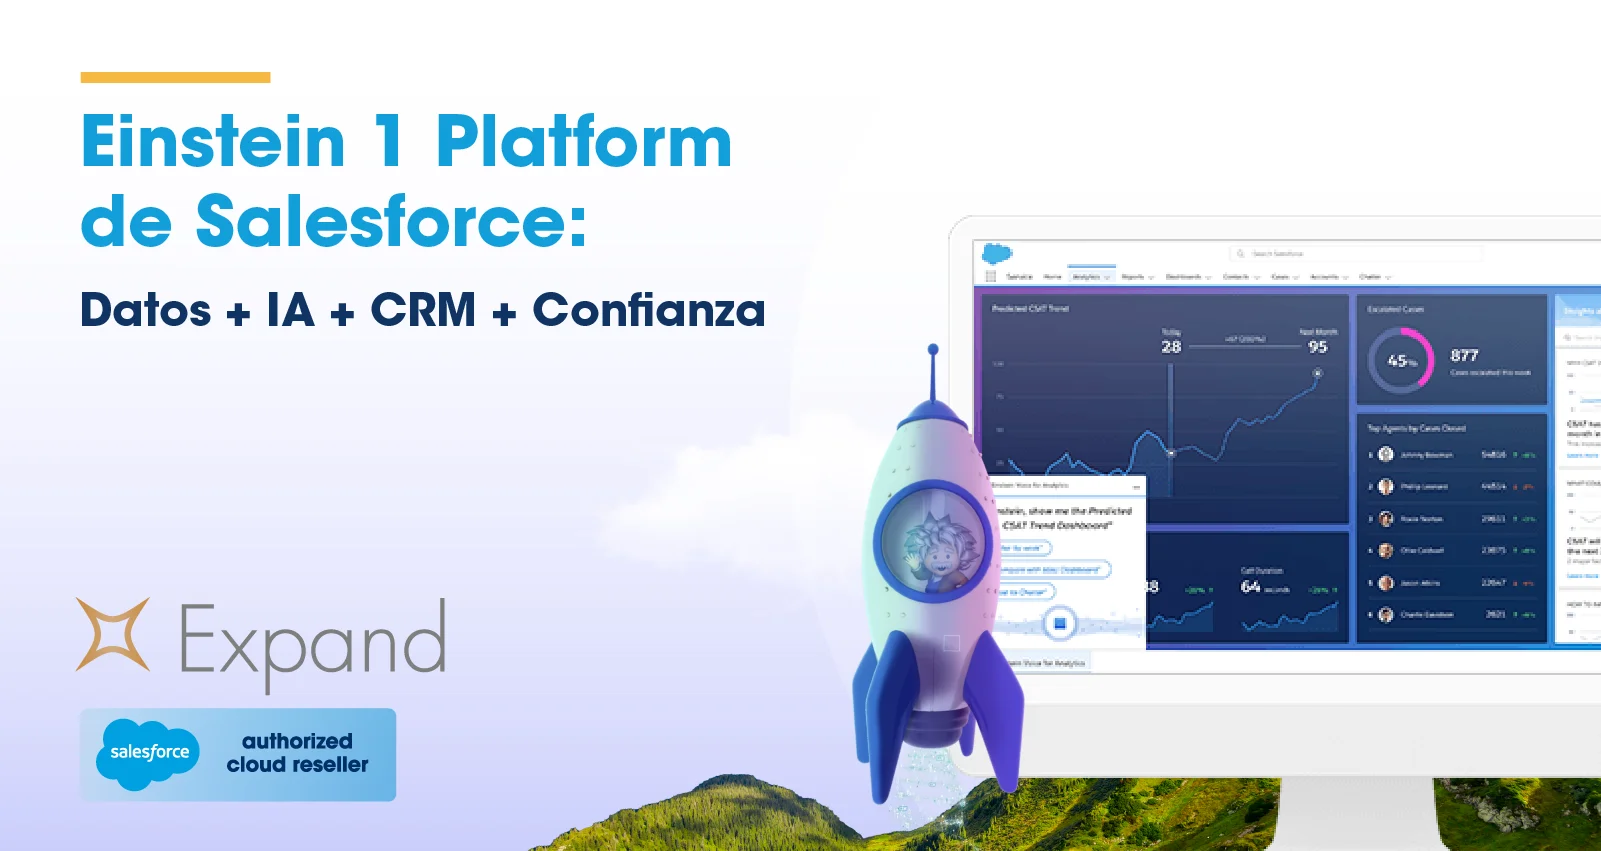 Einstein 1 Platform de Salesforce: Datos + IA + CRM + Confianza